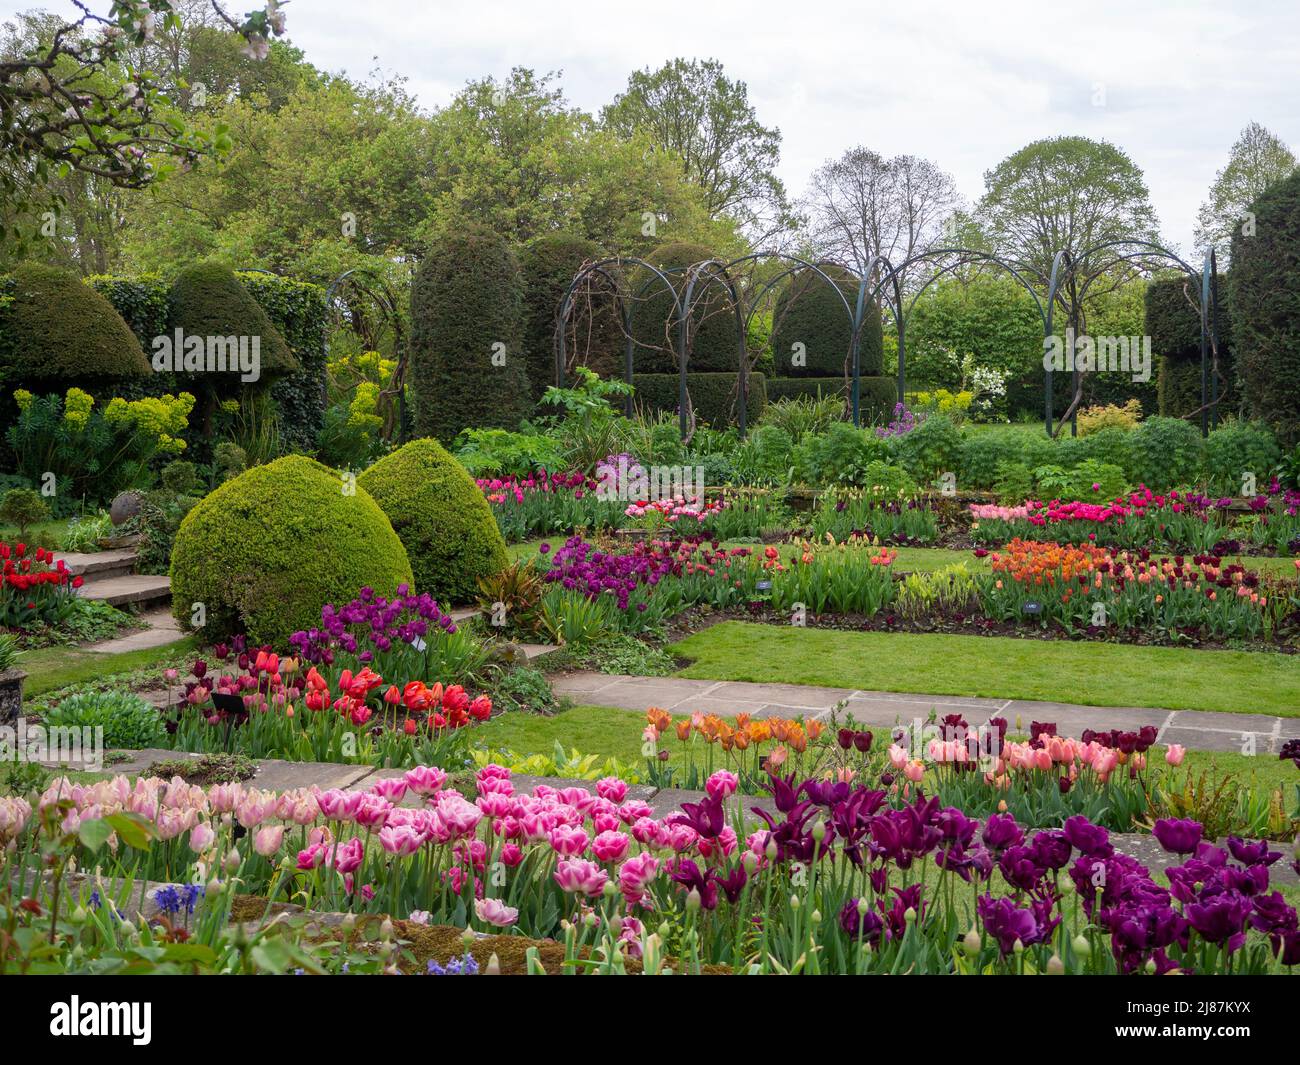 Chenies Manor Garden. Bunte Tulpenarten in der Pflanze Grenzen mit Topiary, Trellia und Graswegen im versunkenen Garten. Stockfoto